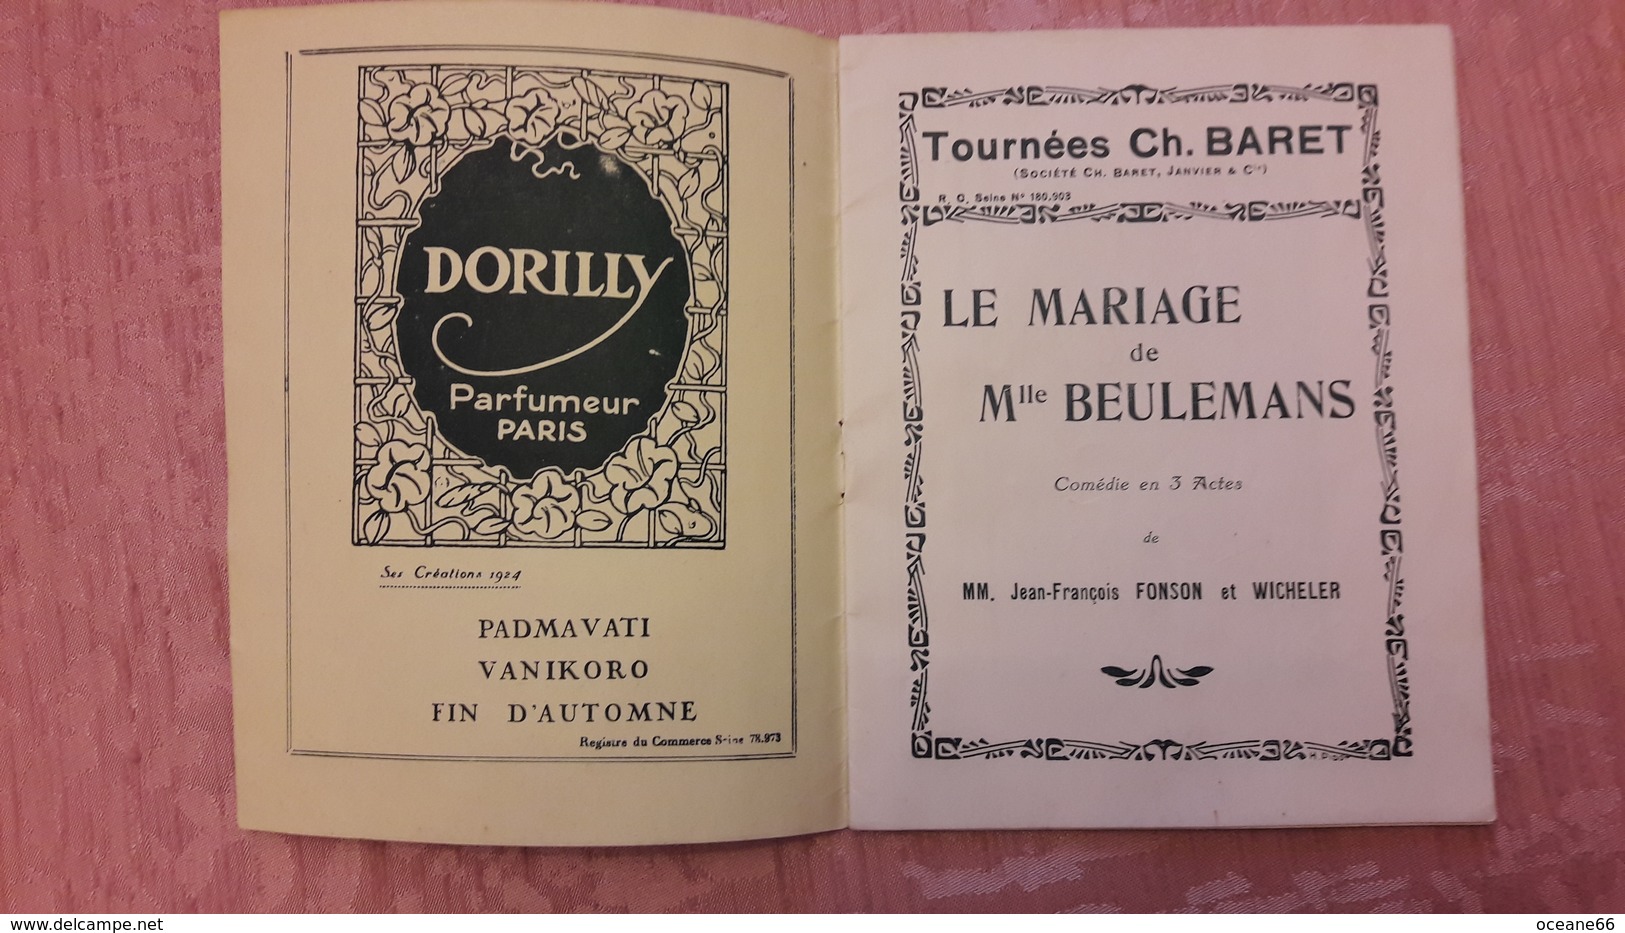 Tournées Ch. Baret Programme Officiel Le Mariage De Mlle Beulemans 1924 Dieudonné Lambret Poitel - French Authors